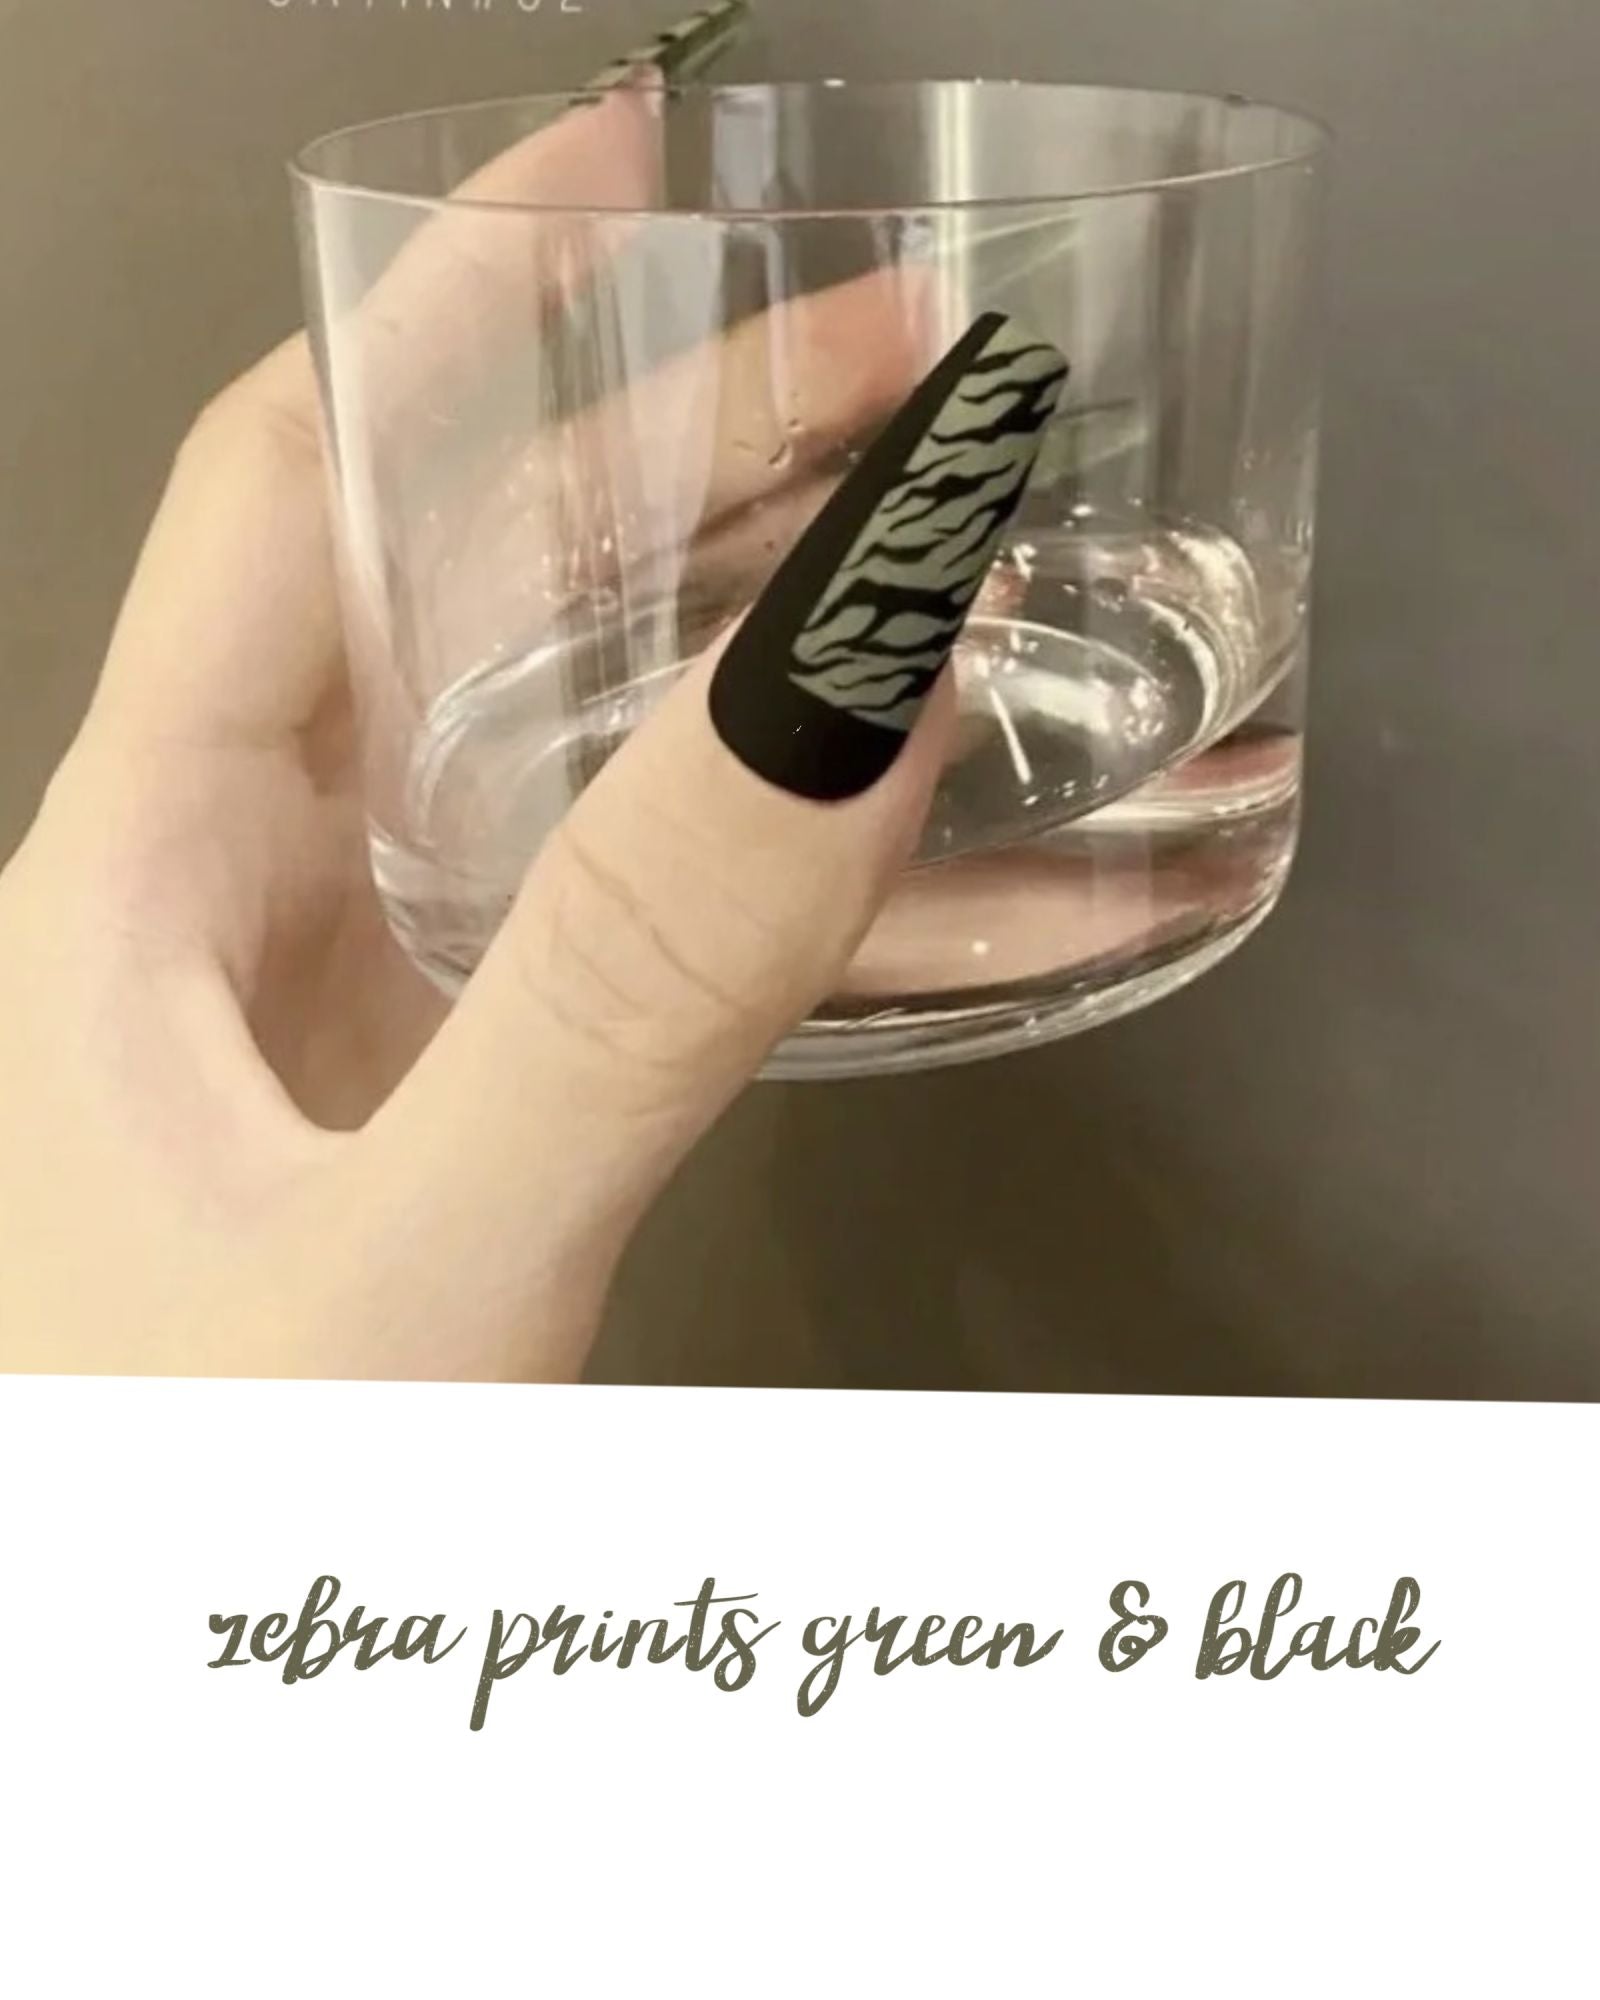 Zebra Prints green & black coffin nails/ballerina nails/press on/fake nails